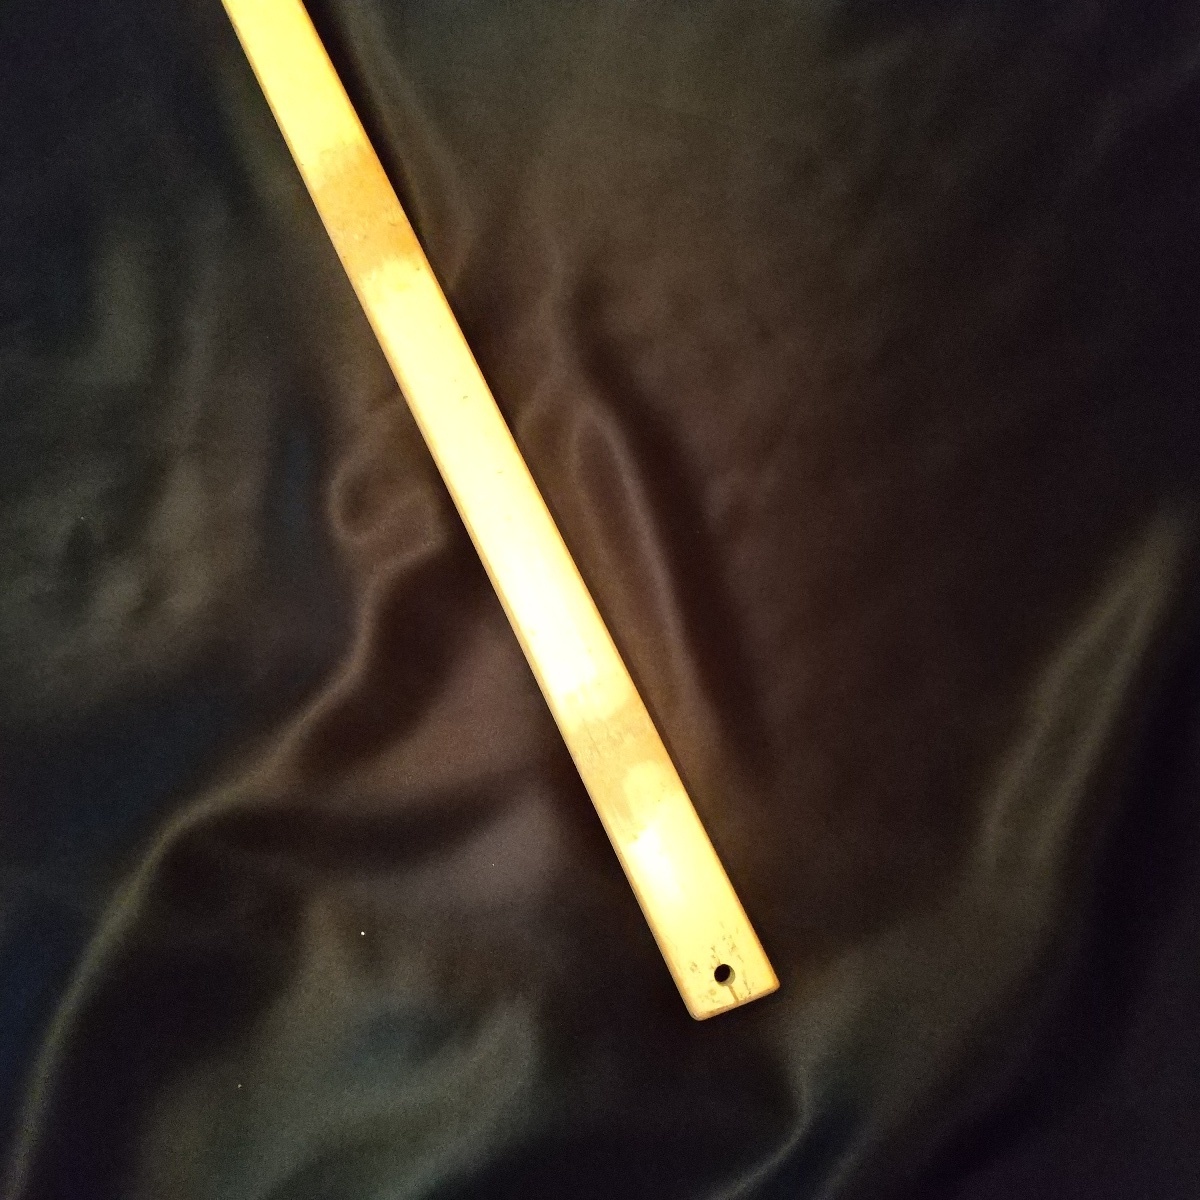  деревянный меч * kendo * тренировка для * длина примерно 83cm* вес примерно 323g